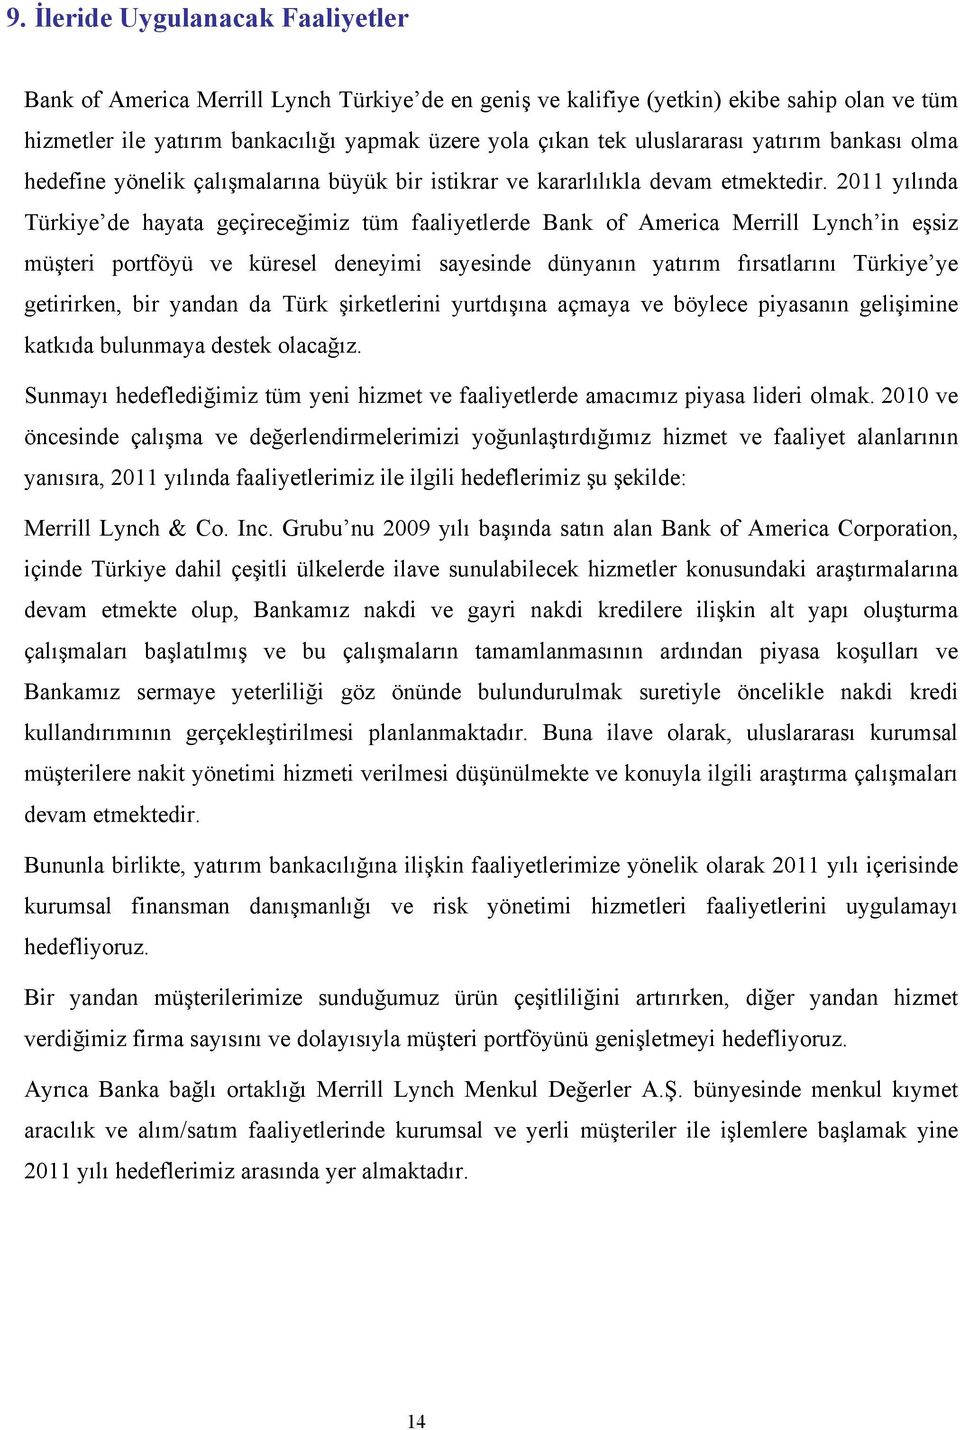 2011 yılında Türkiye de hayata geçireceğimiz tüm faaliyetlerde Bank of America Merrill Lynch in eşsiz müşteri portföyü ve küresel deneyimi sayesinde dünyanın yatırım fırsatlarını Türkiye ye